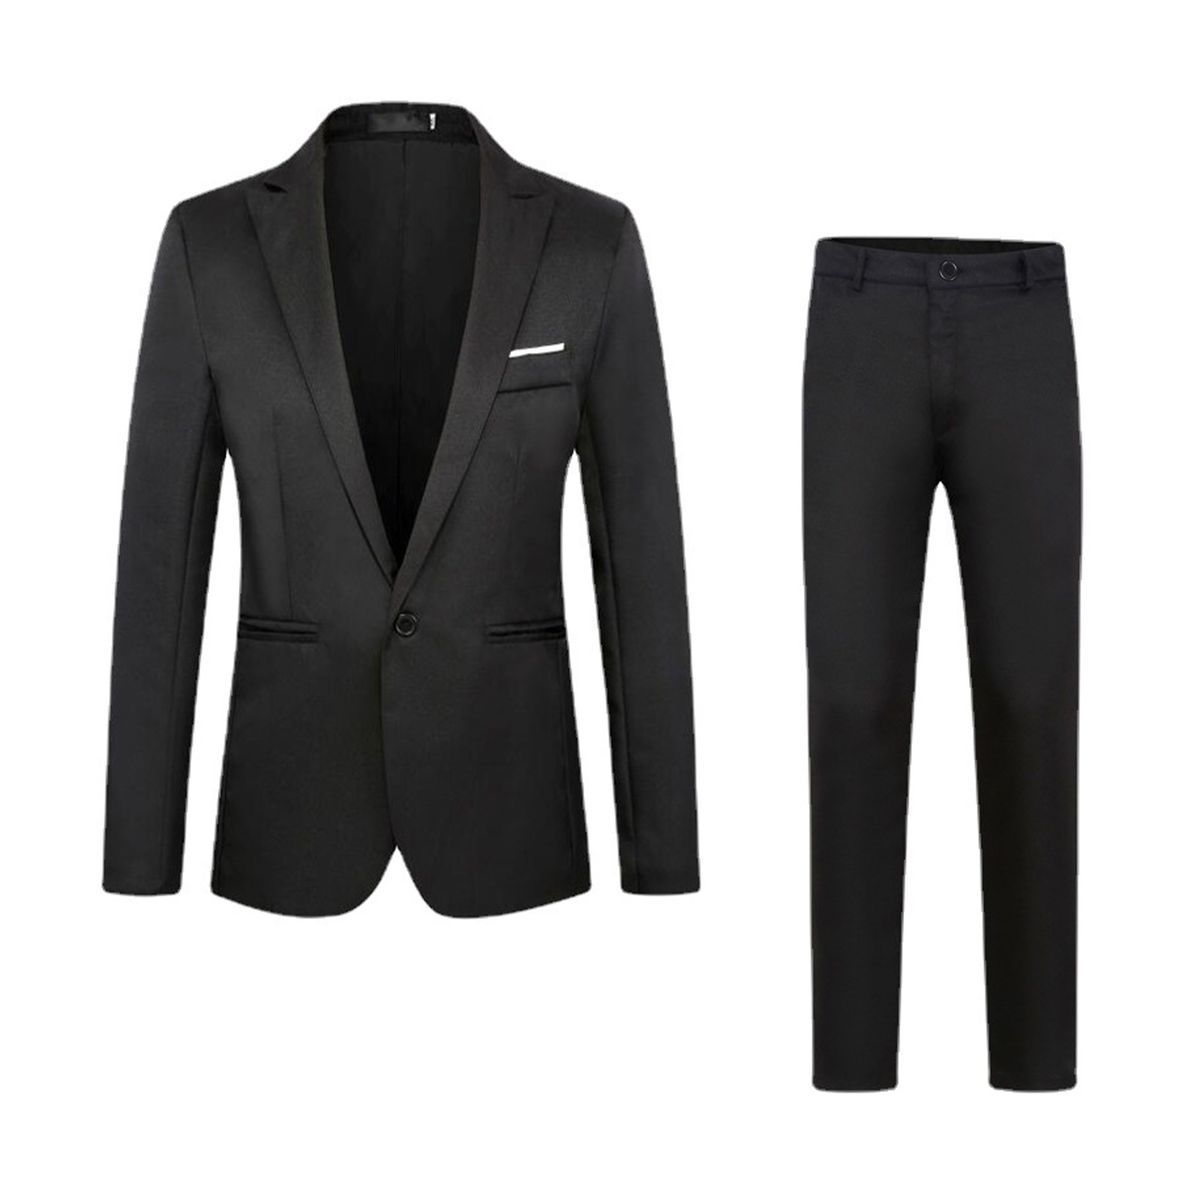 Men's 2 Piece Men's business Suit Slim Solid Color Formal Suits - Black ...